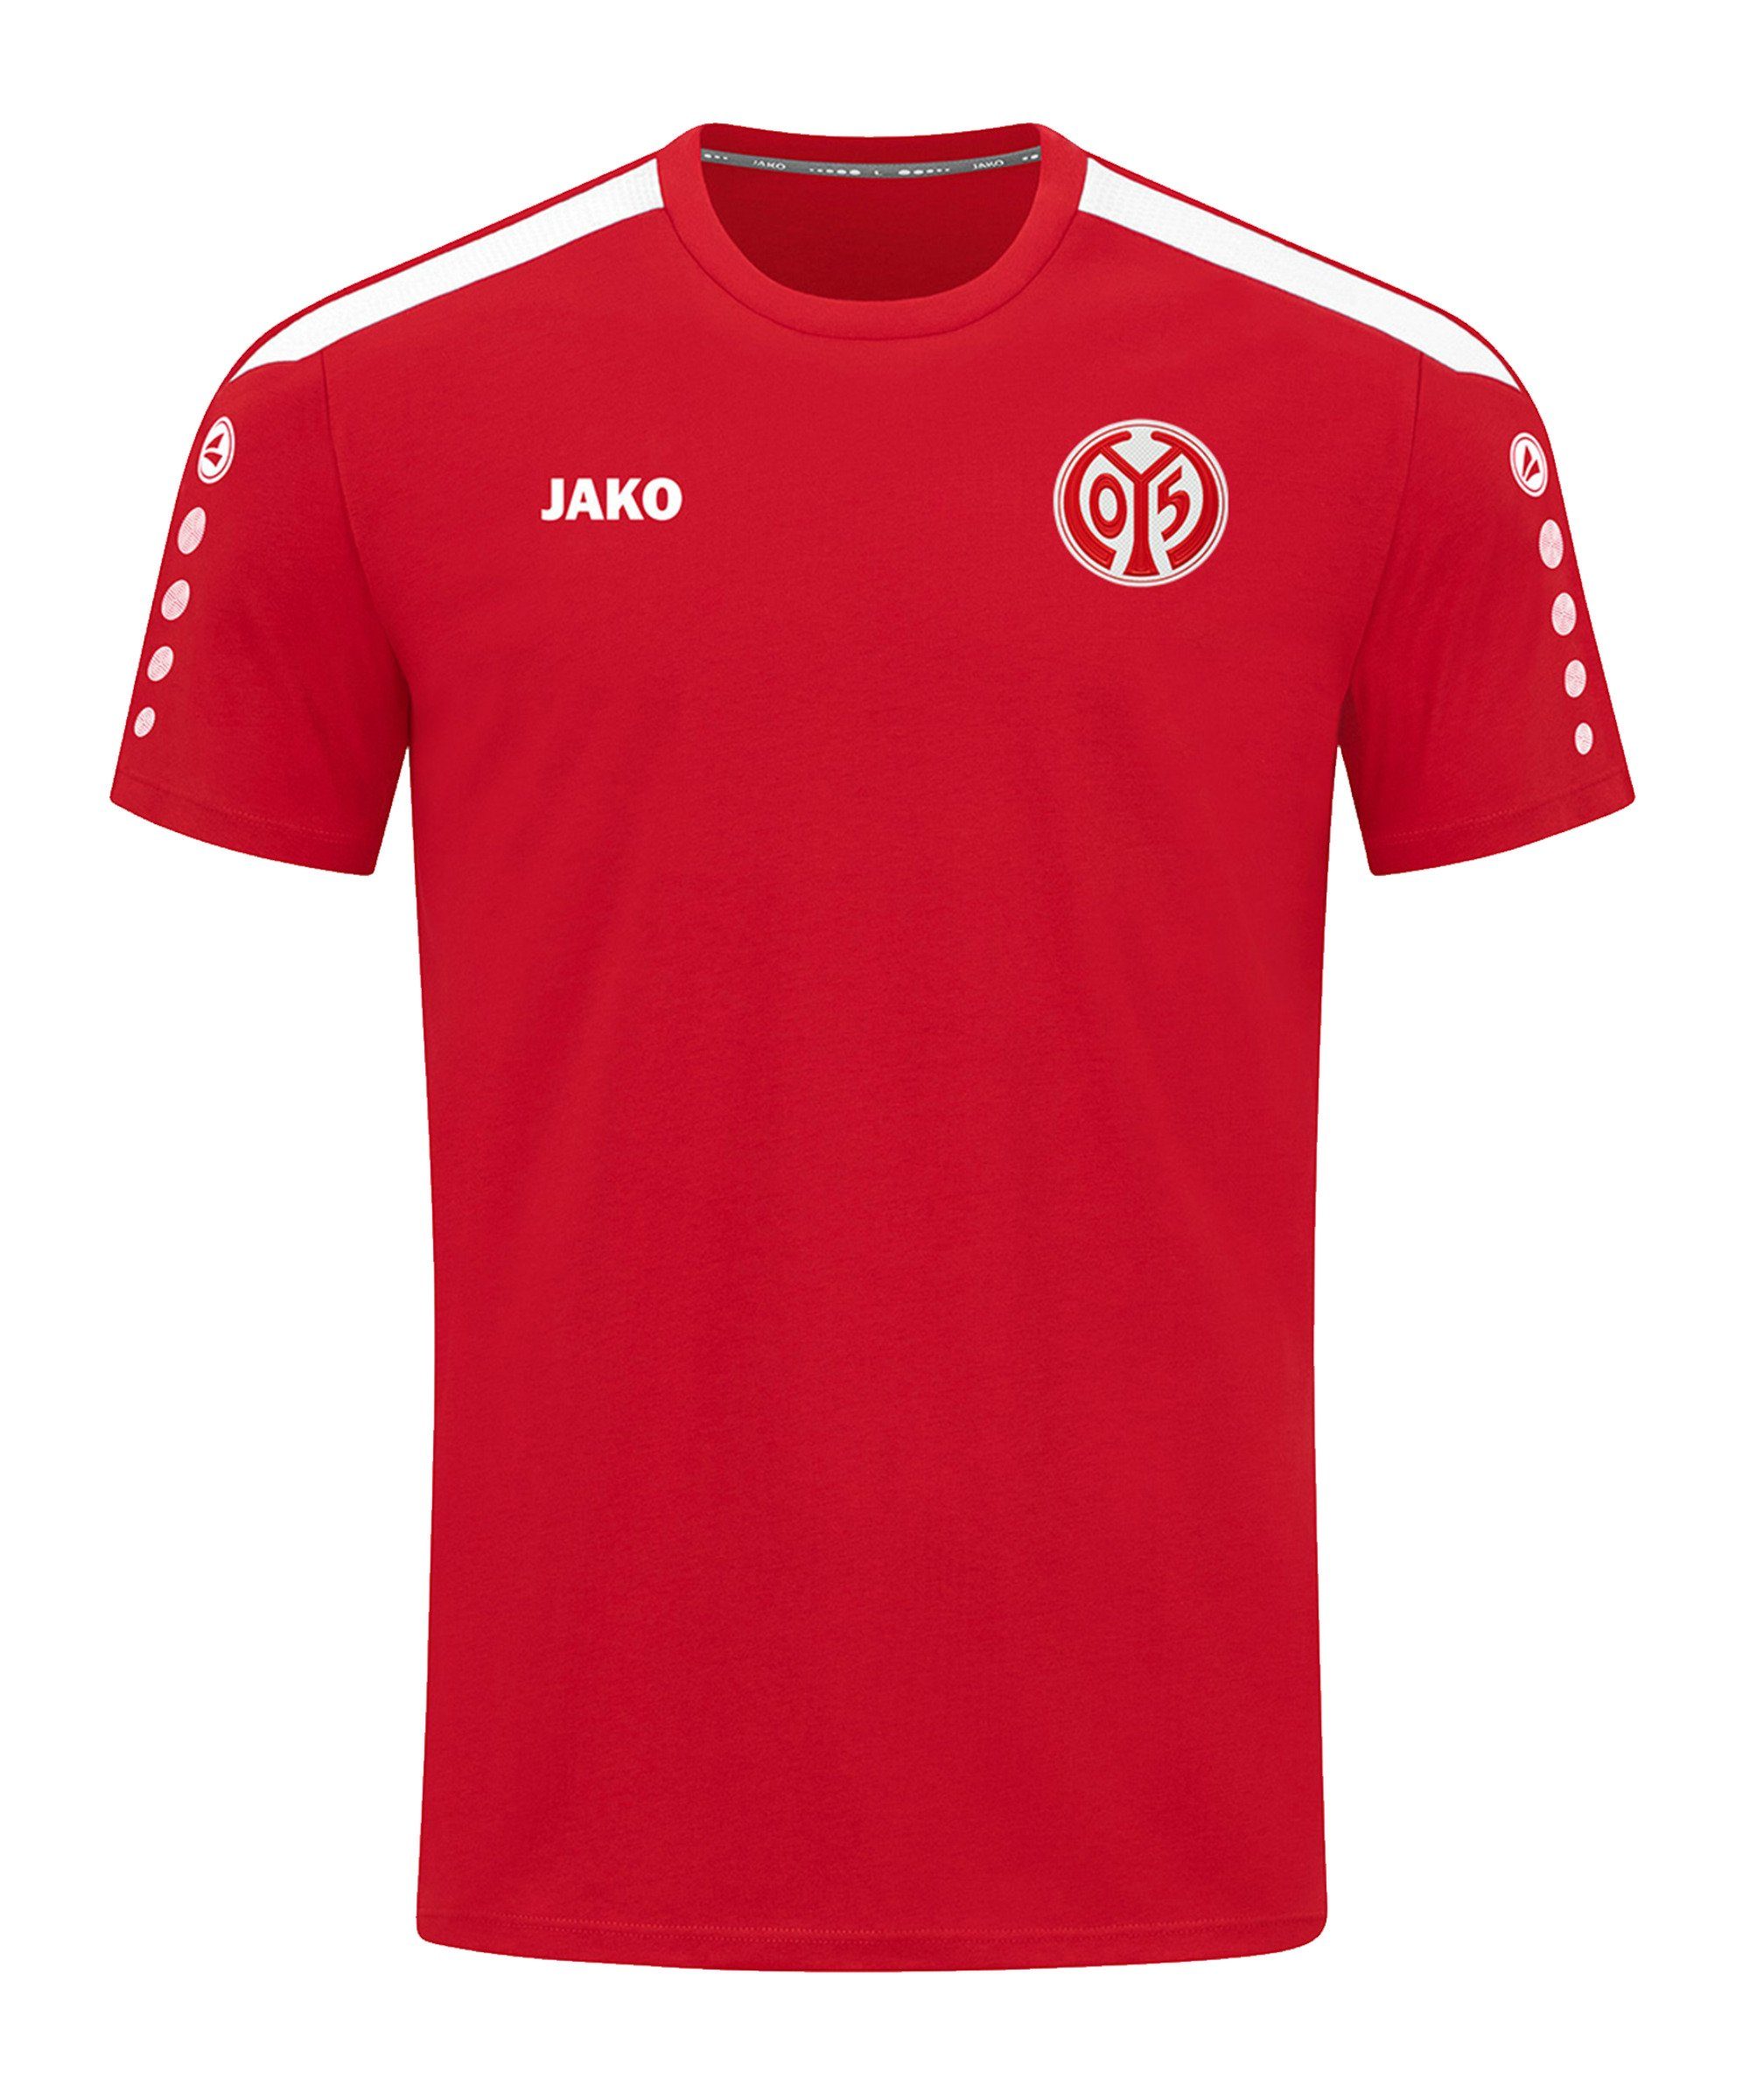 Jako T-Shirt 1. FSV Mainz 05 Power T-Shirt default rot